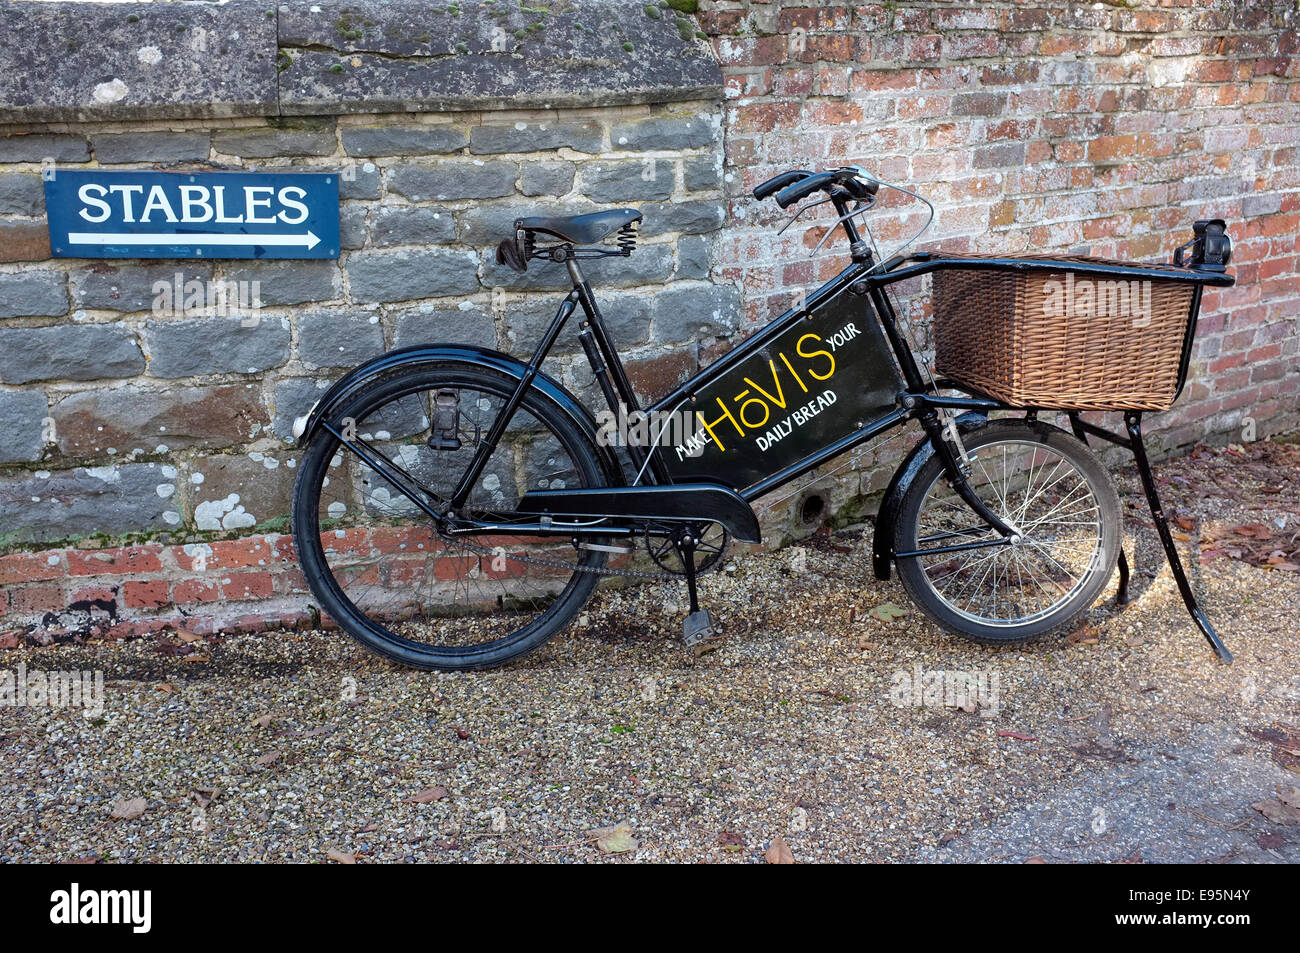 Vintage degli anni trenta bakers (Tradesman's) consegna bicicletta con cesto di vimini e la vecchia insegna la scrittura Hovis ha pannello pubblicitario. Foto Stock